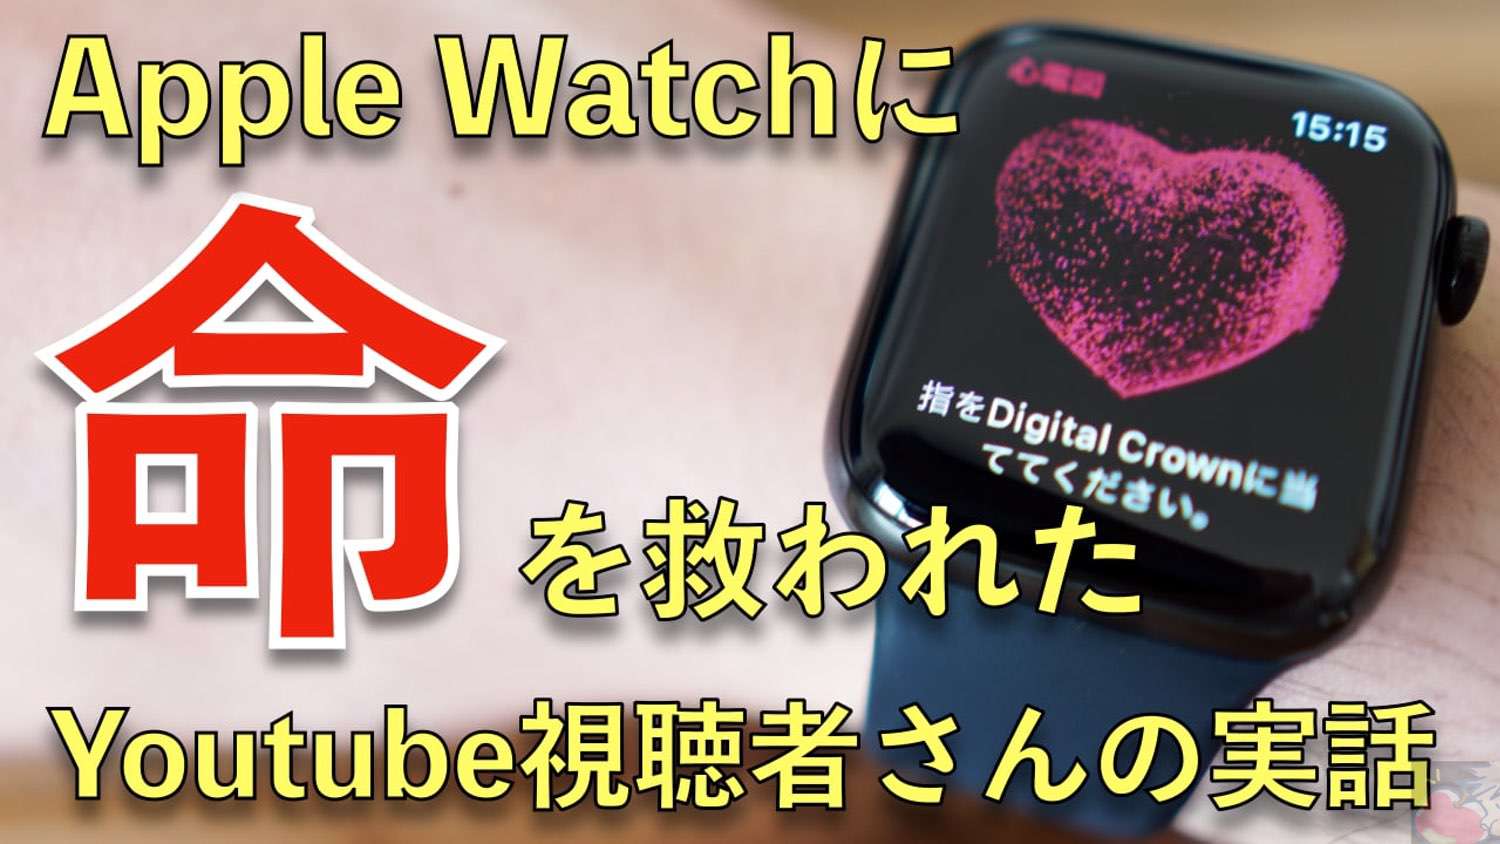 【必読】Apple Watchに命を救われたYoutube視聴者さんのお話